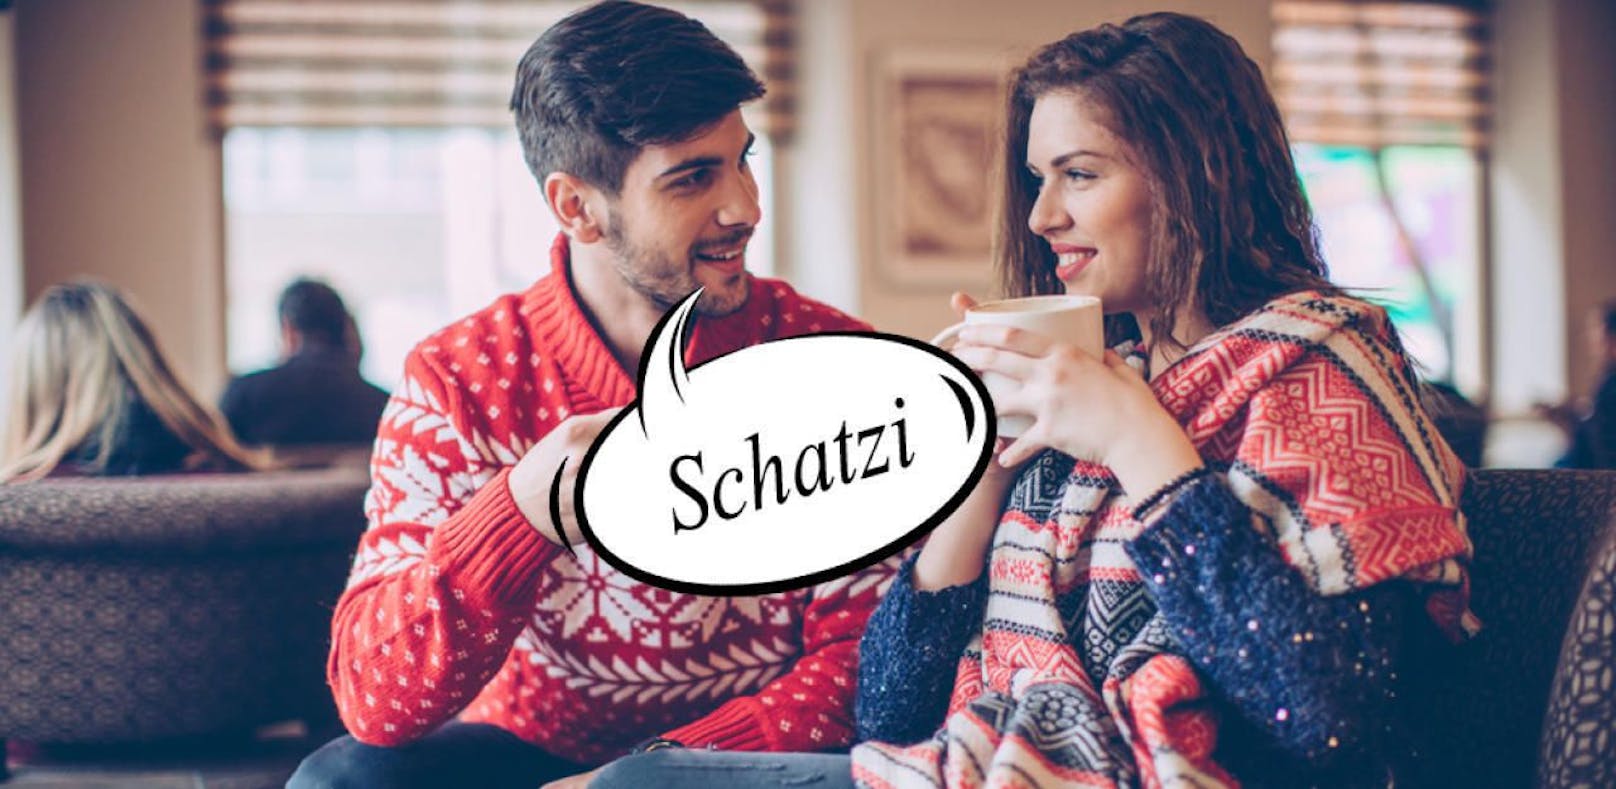 Was ist der beliebteste Kosenamen Österreichs? Richtig erraten: Schatzi!